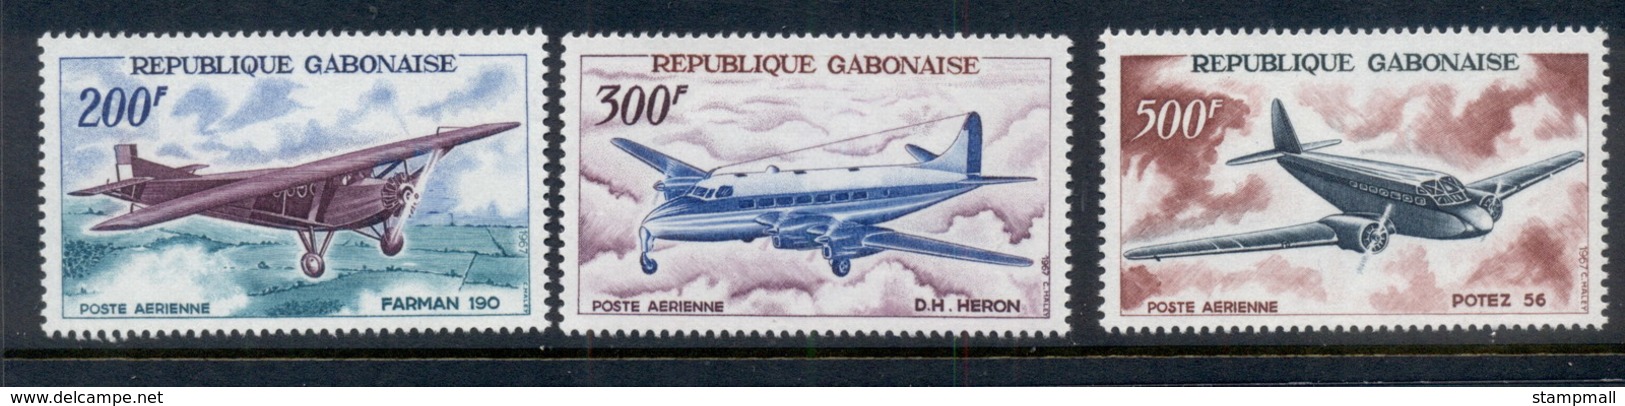 Gabon 1967 Vintage Planes MUH - Gabon